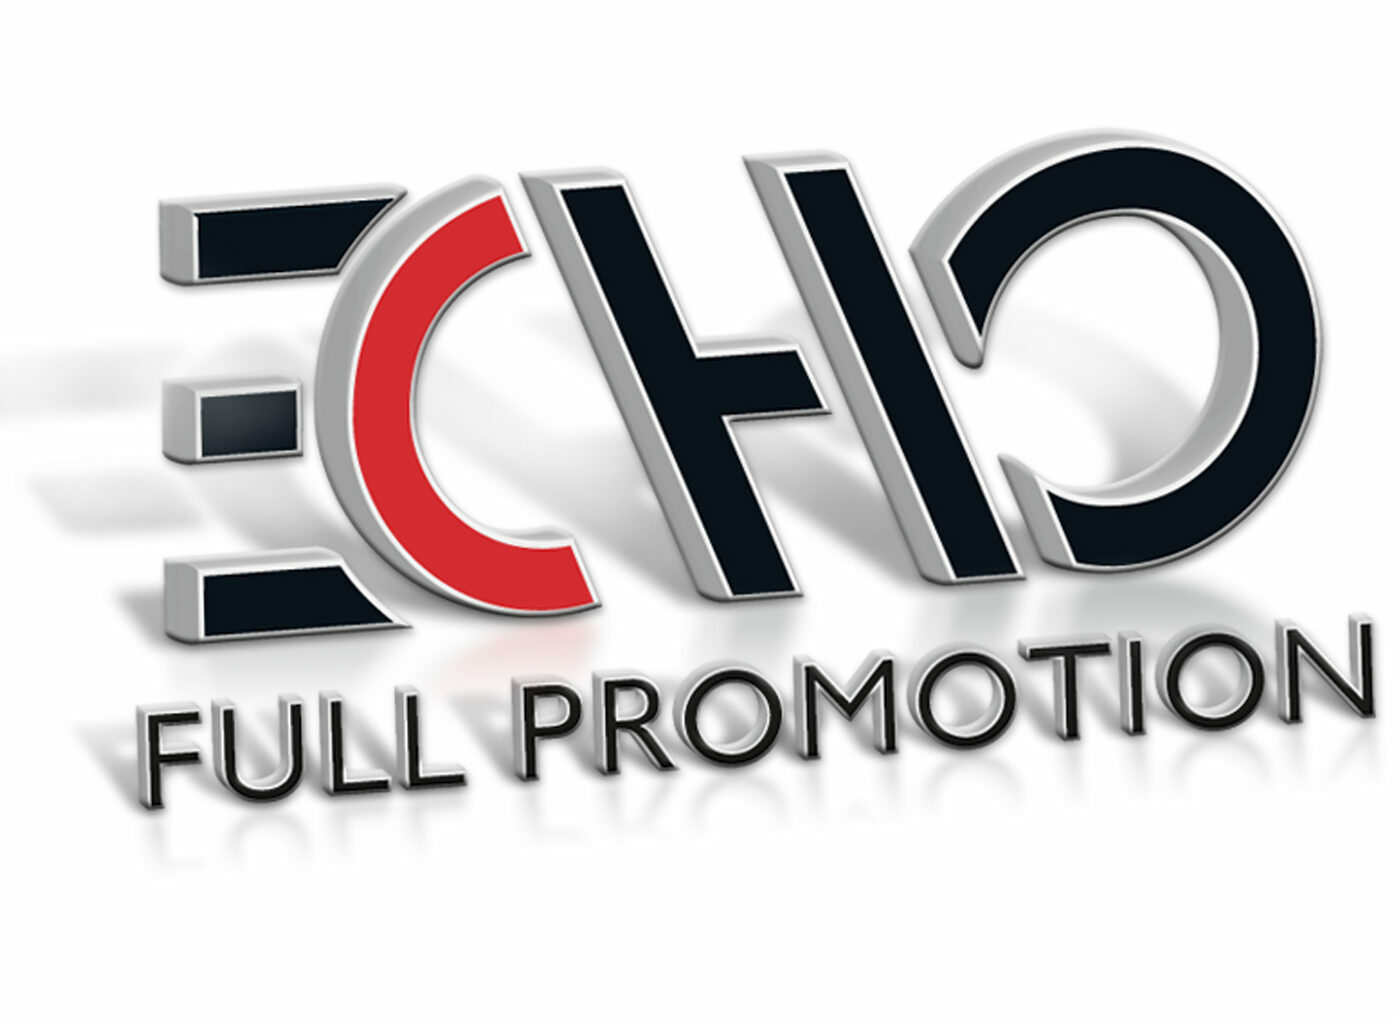 Echo Full Promotion